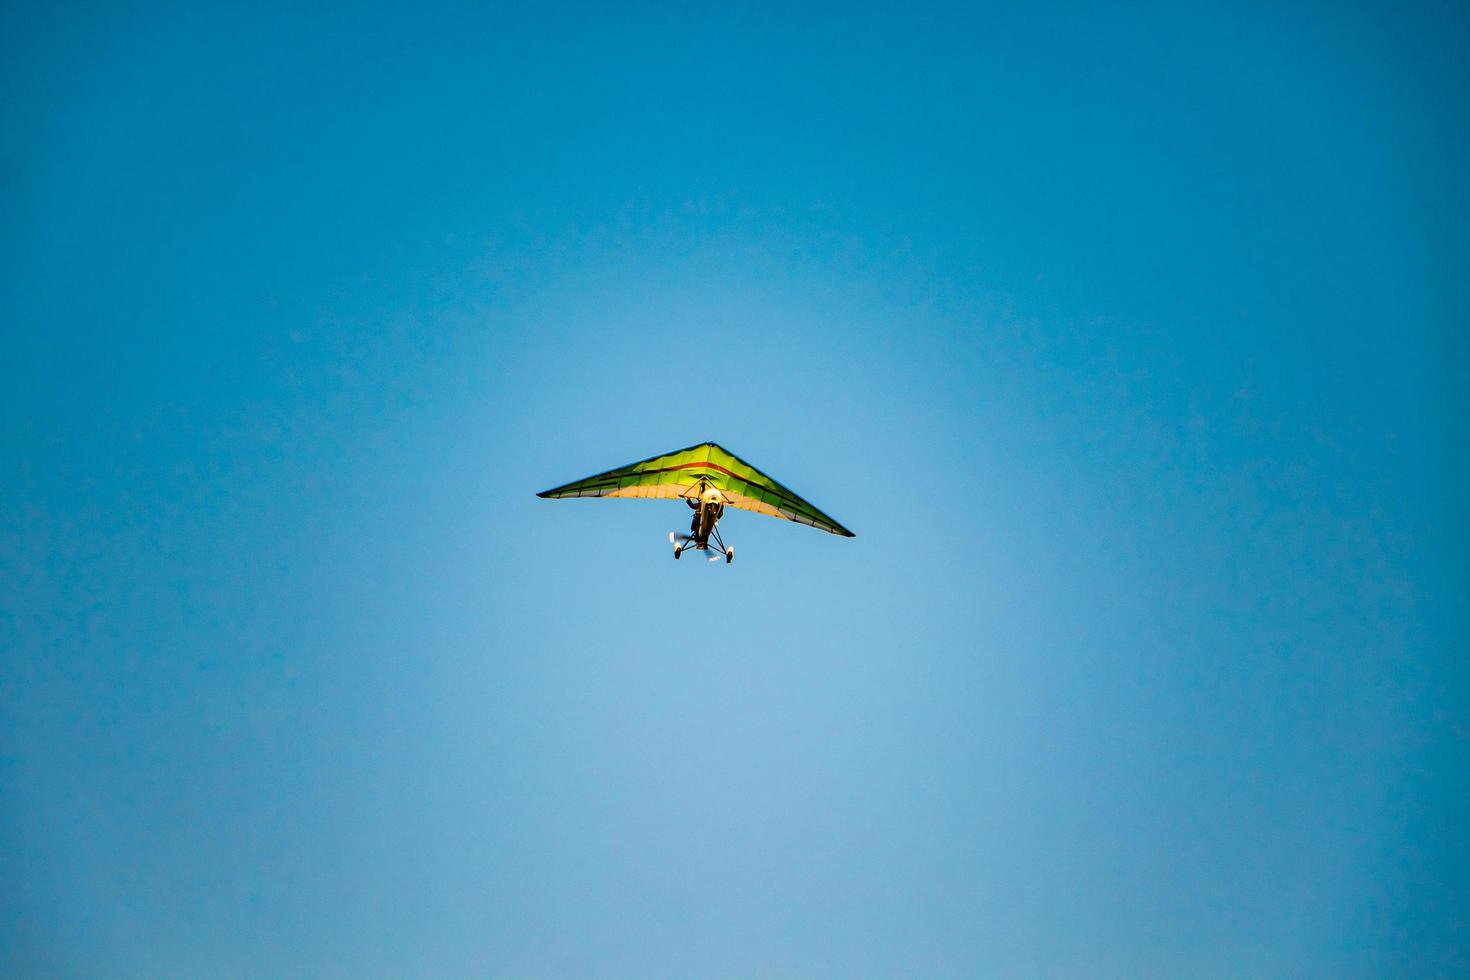 deltaplane dans le ciel bleu. sport extrême, vols aériens photo